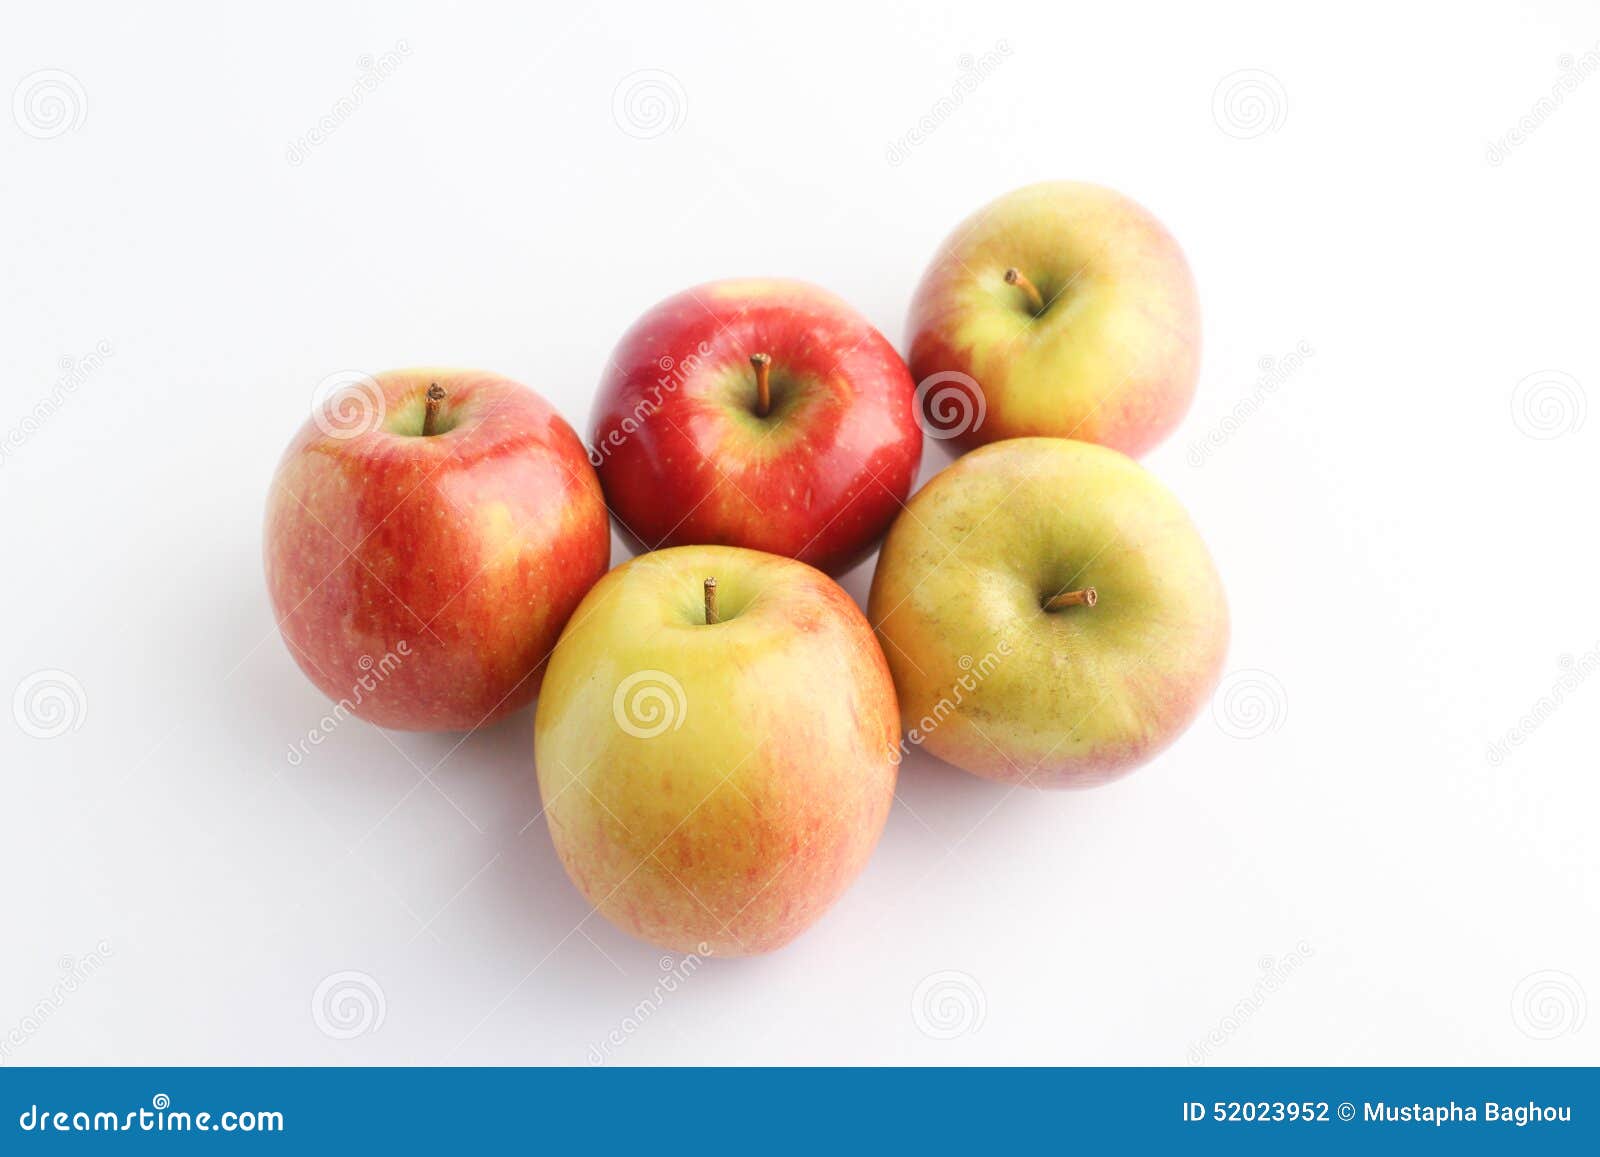 cinq pommes en perspective